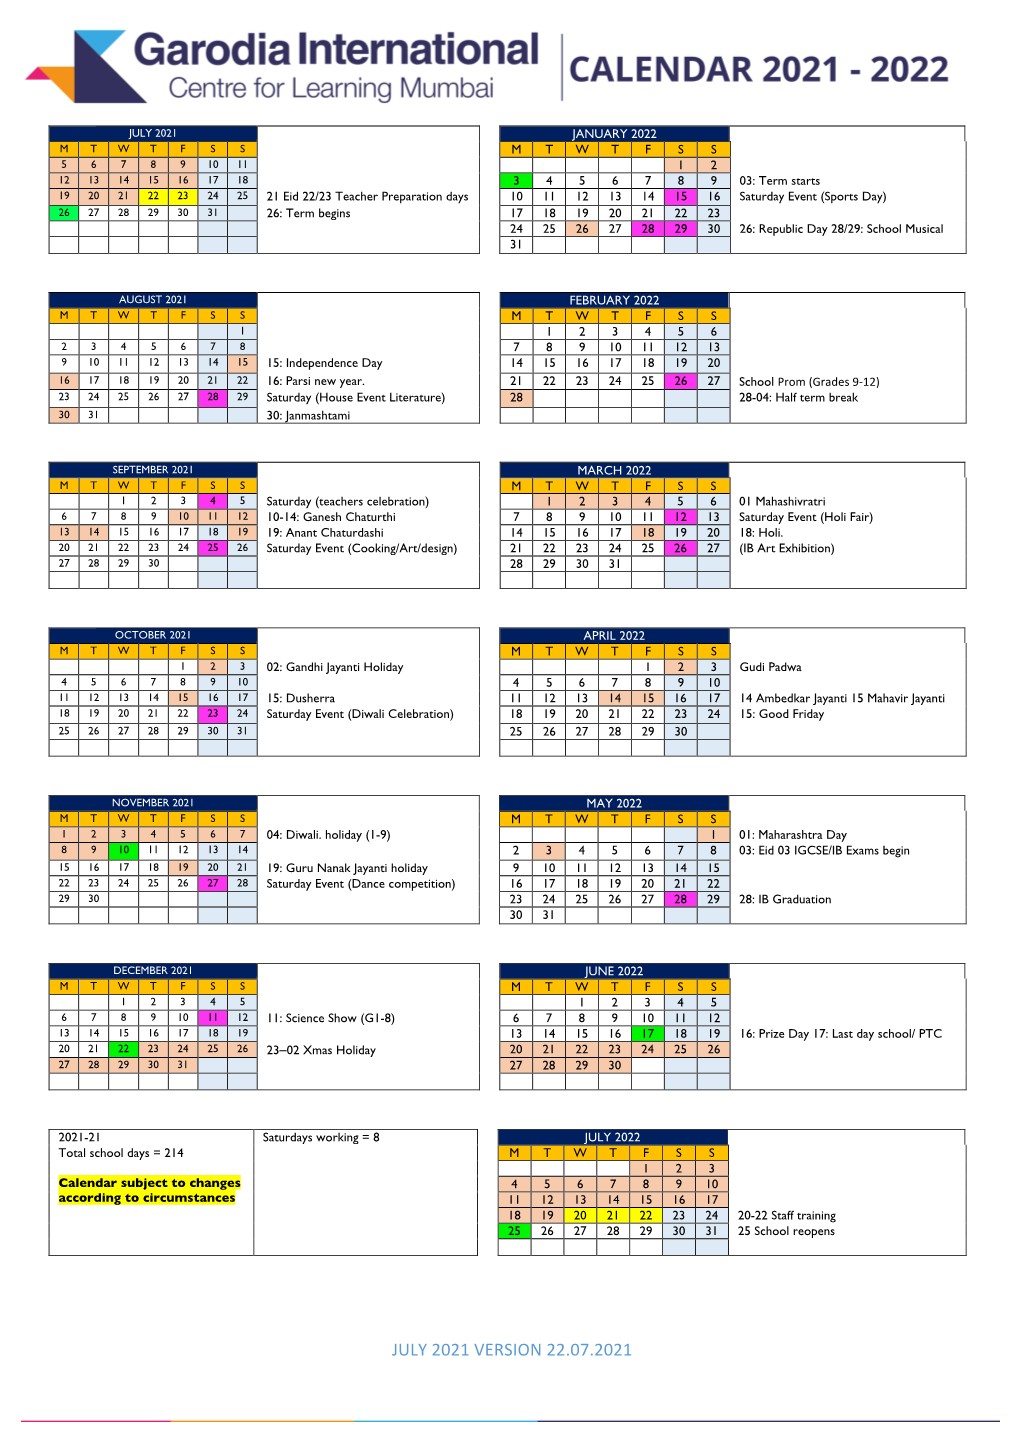 Download School Calendar 2021-2022